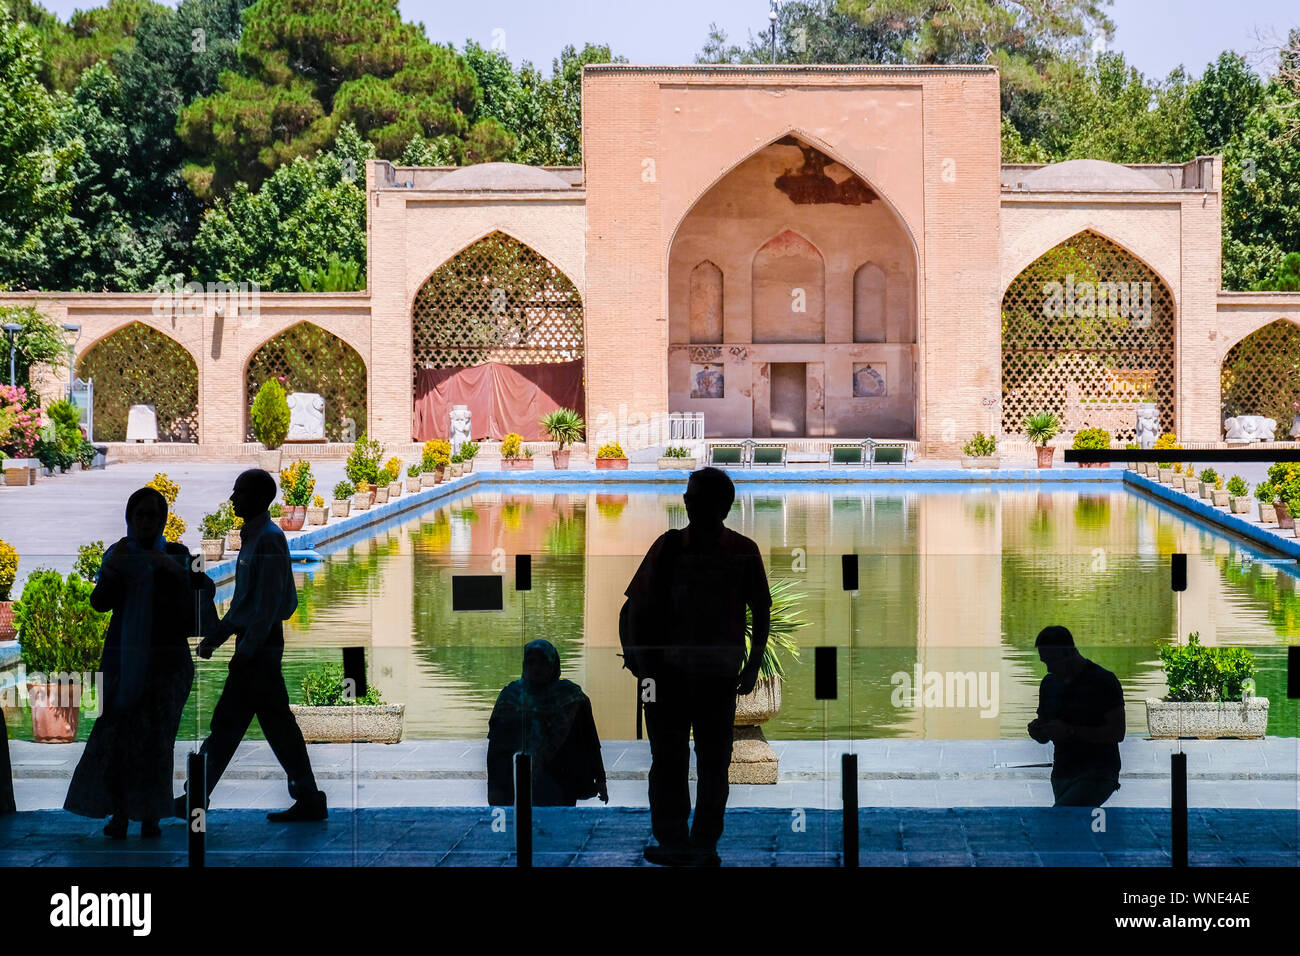 Piscina in un giardino persiano. Foto Stock